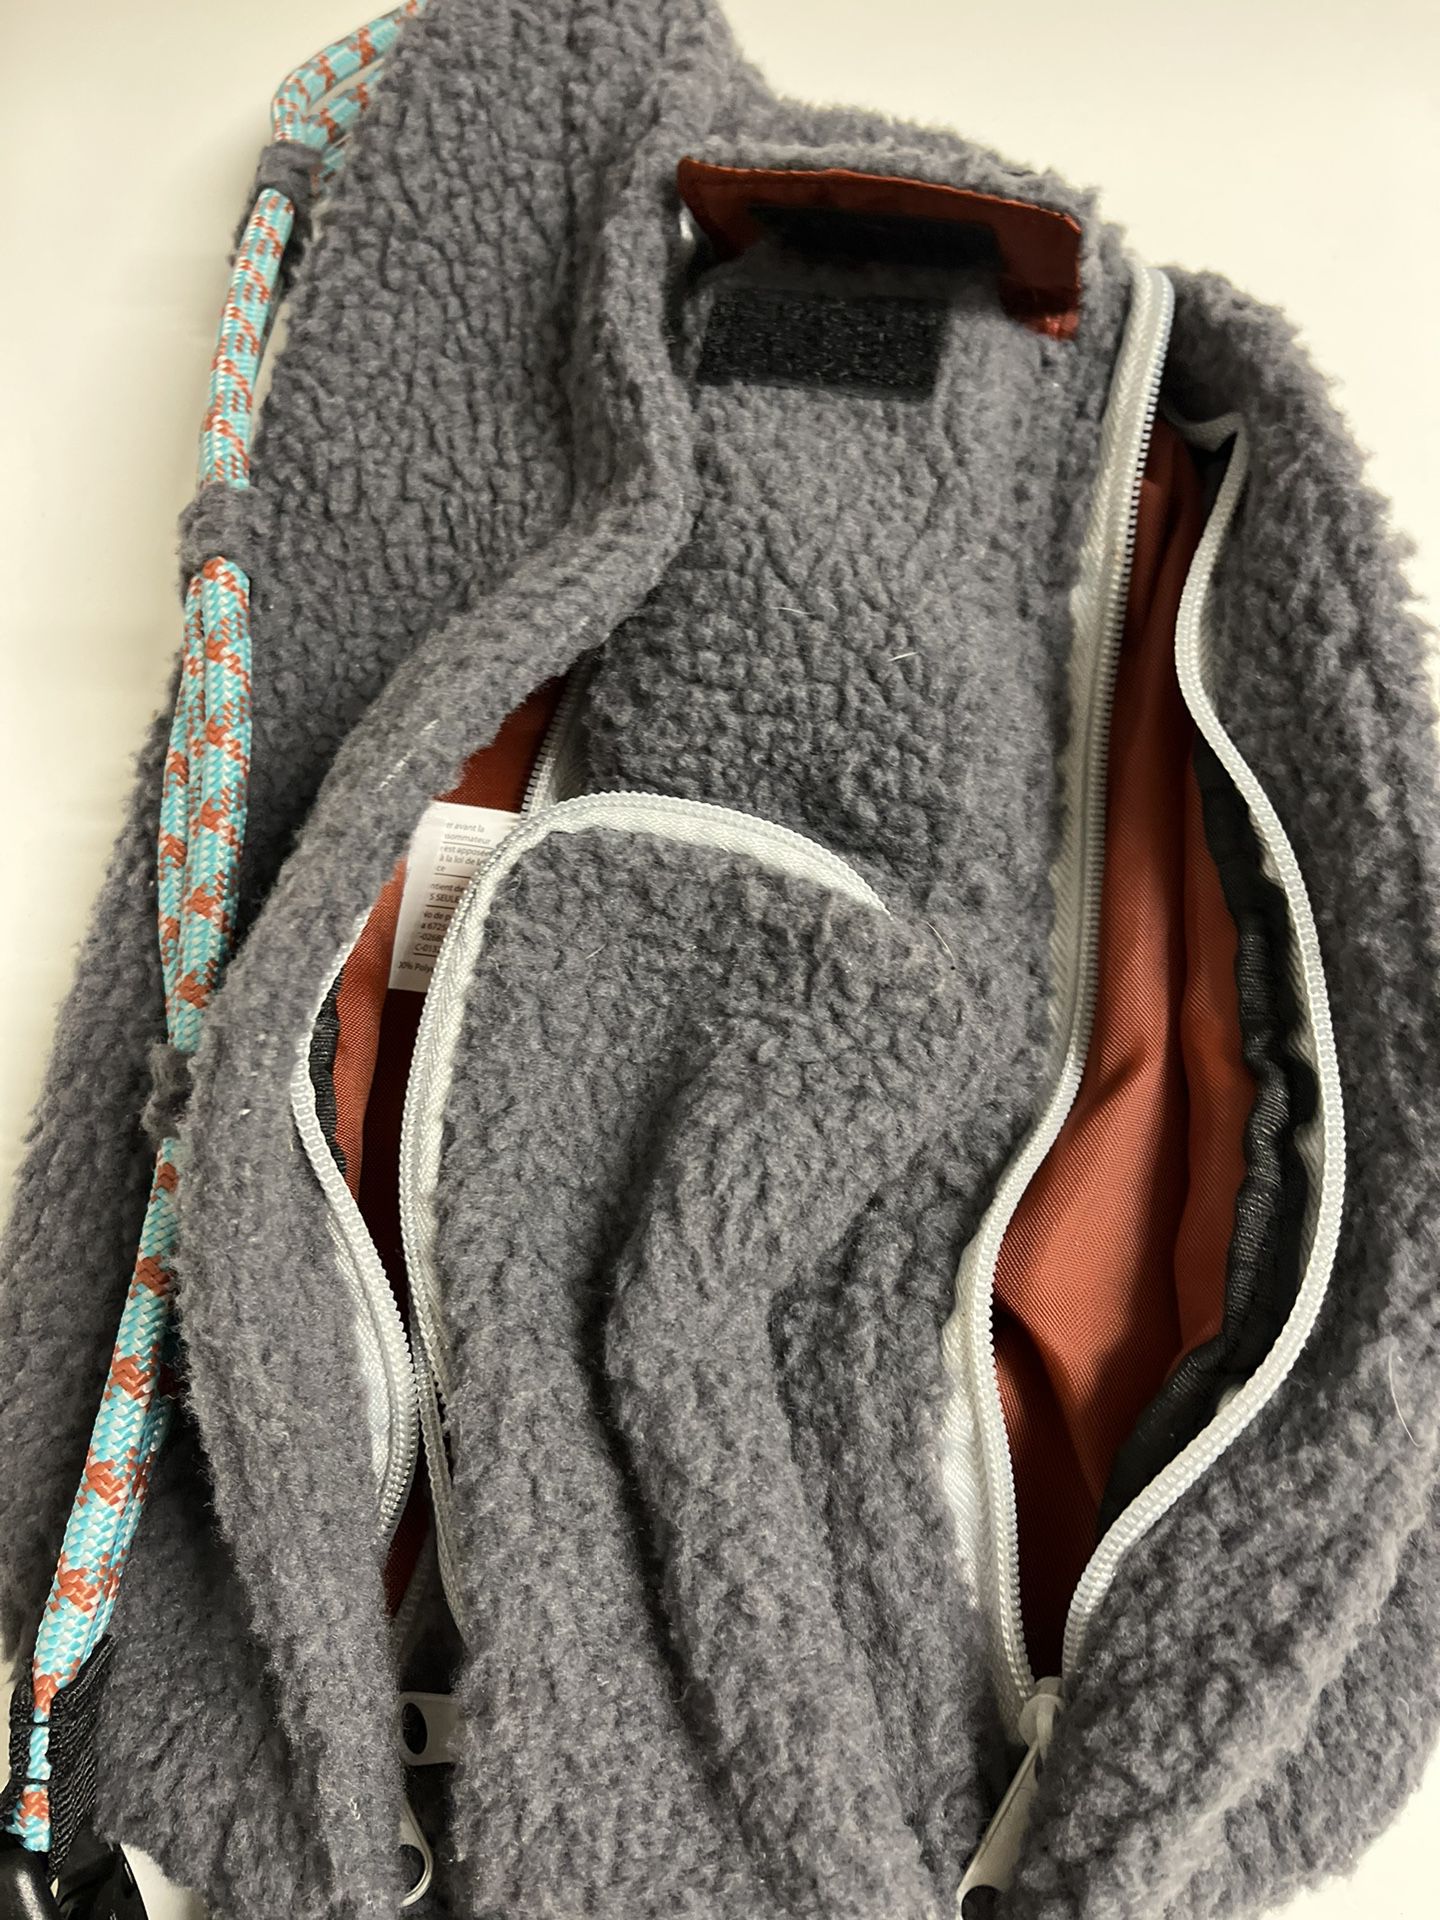 backpack, rope bag sling…adjustable 